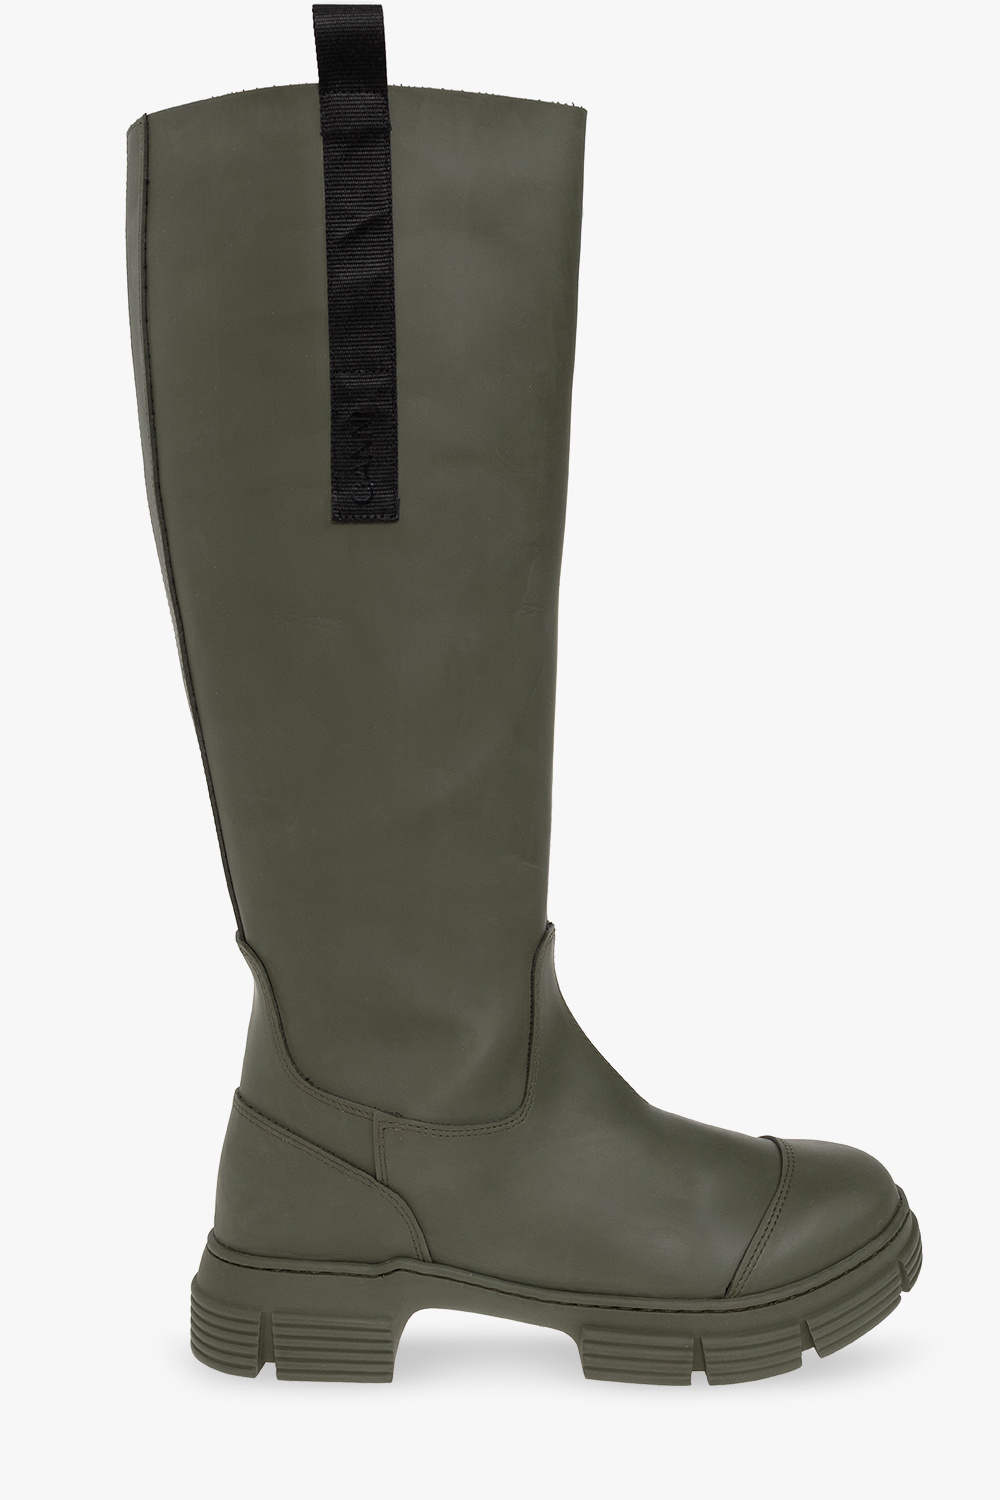 Green Rain boots Ganni - Vitkac Canada